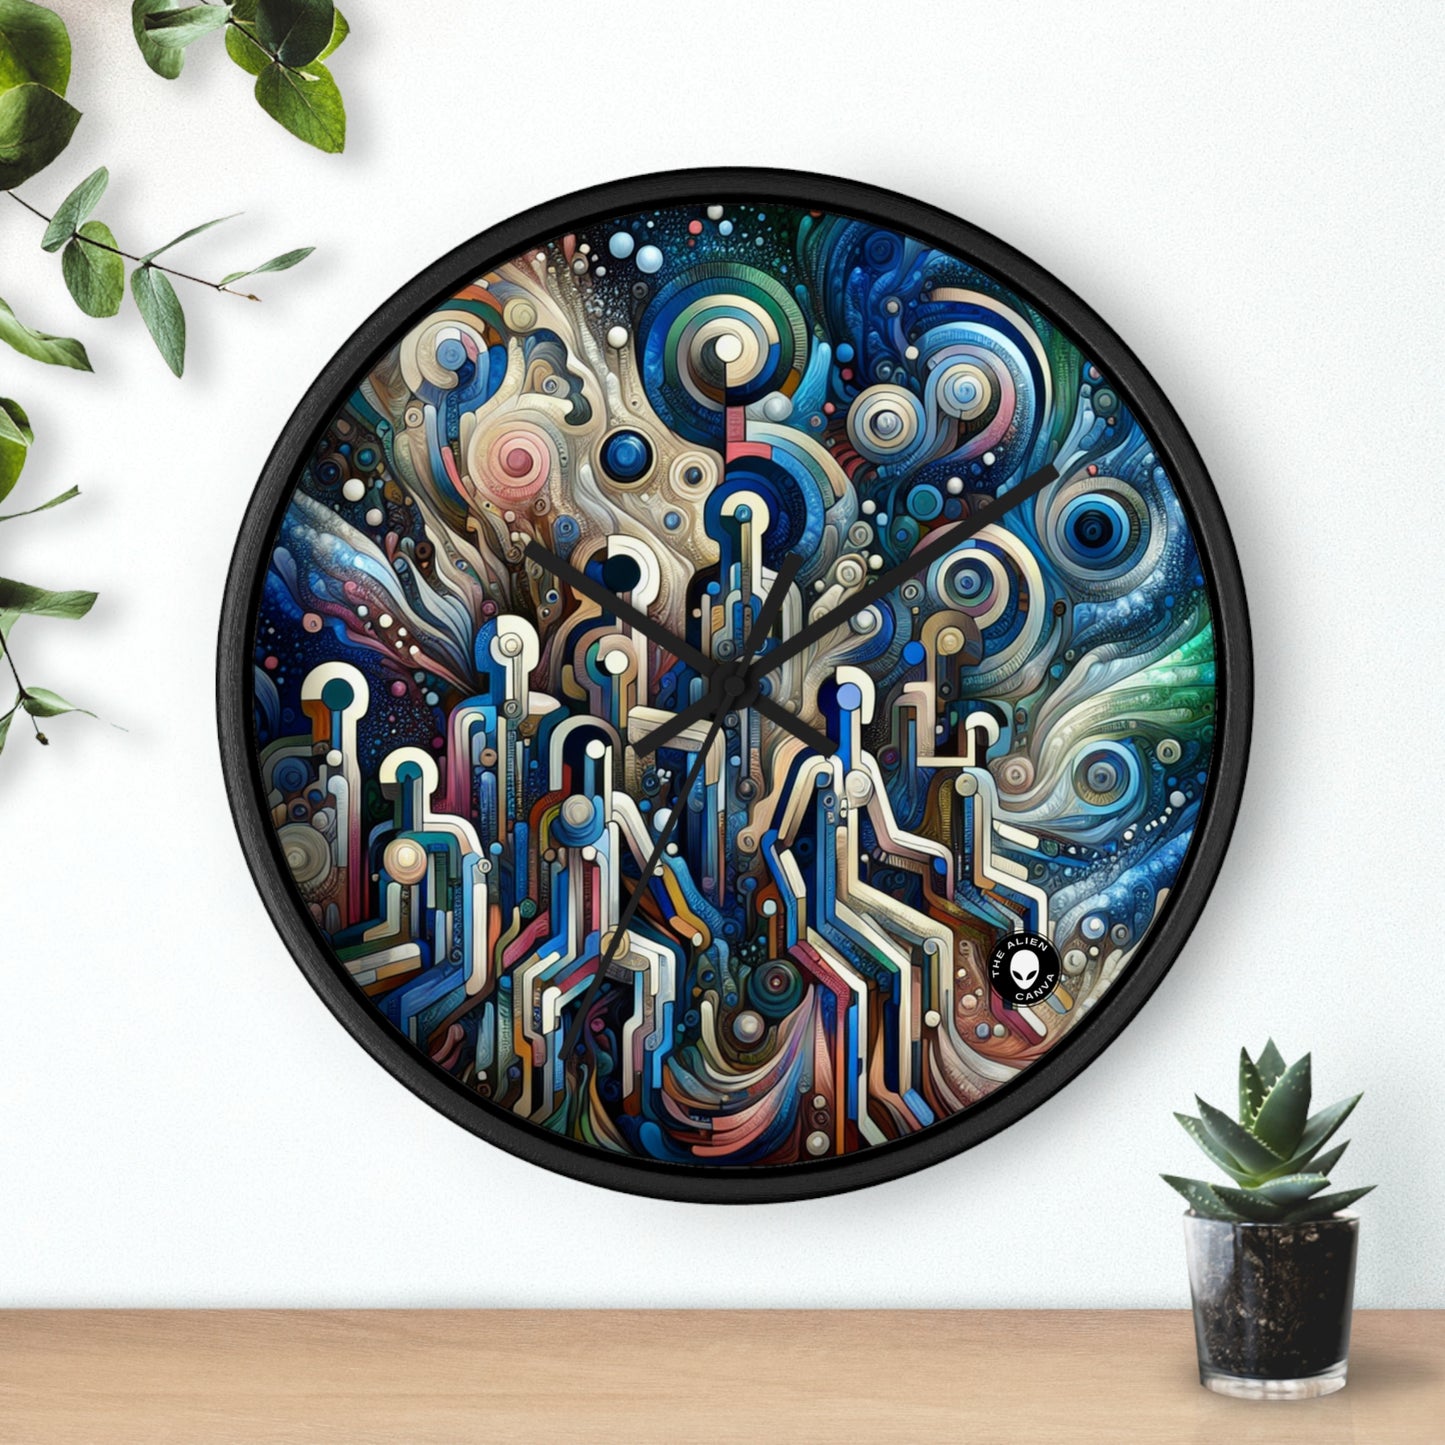 "Élégance divine : salle de bal des dieux et des déesses inspirée du maniérisme" - Le maniérisme de l'horloge murale extraterrestre